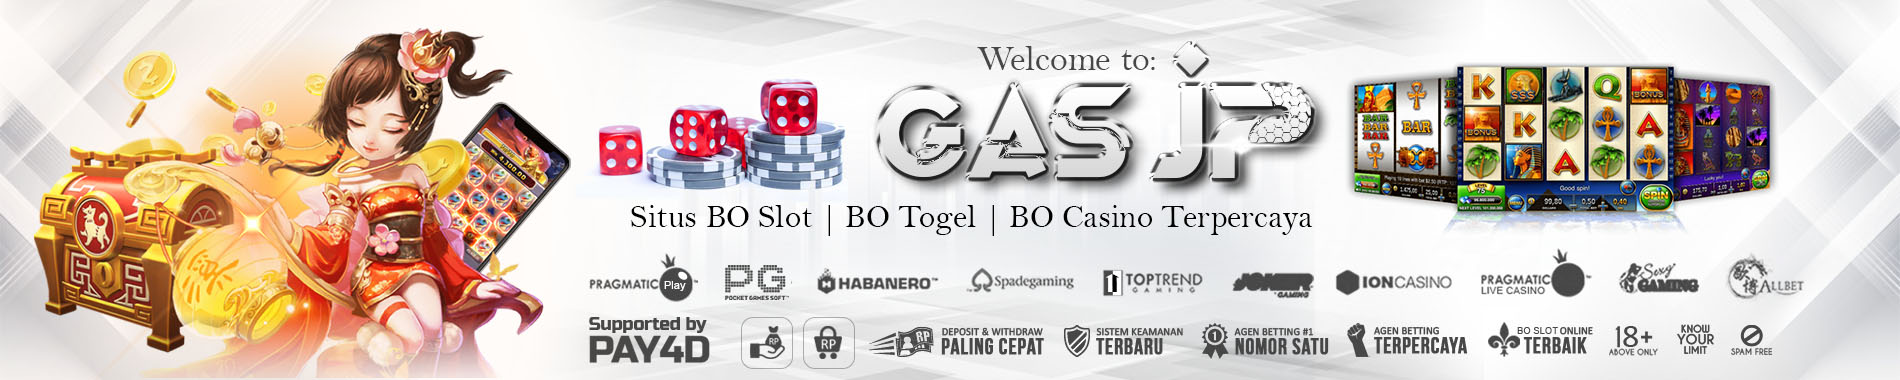 Situs BO Slot | BO Togel | BO Casino Terpercaya GasJP